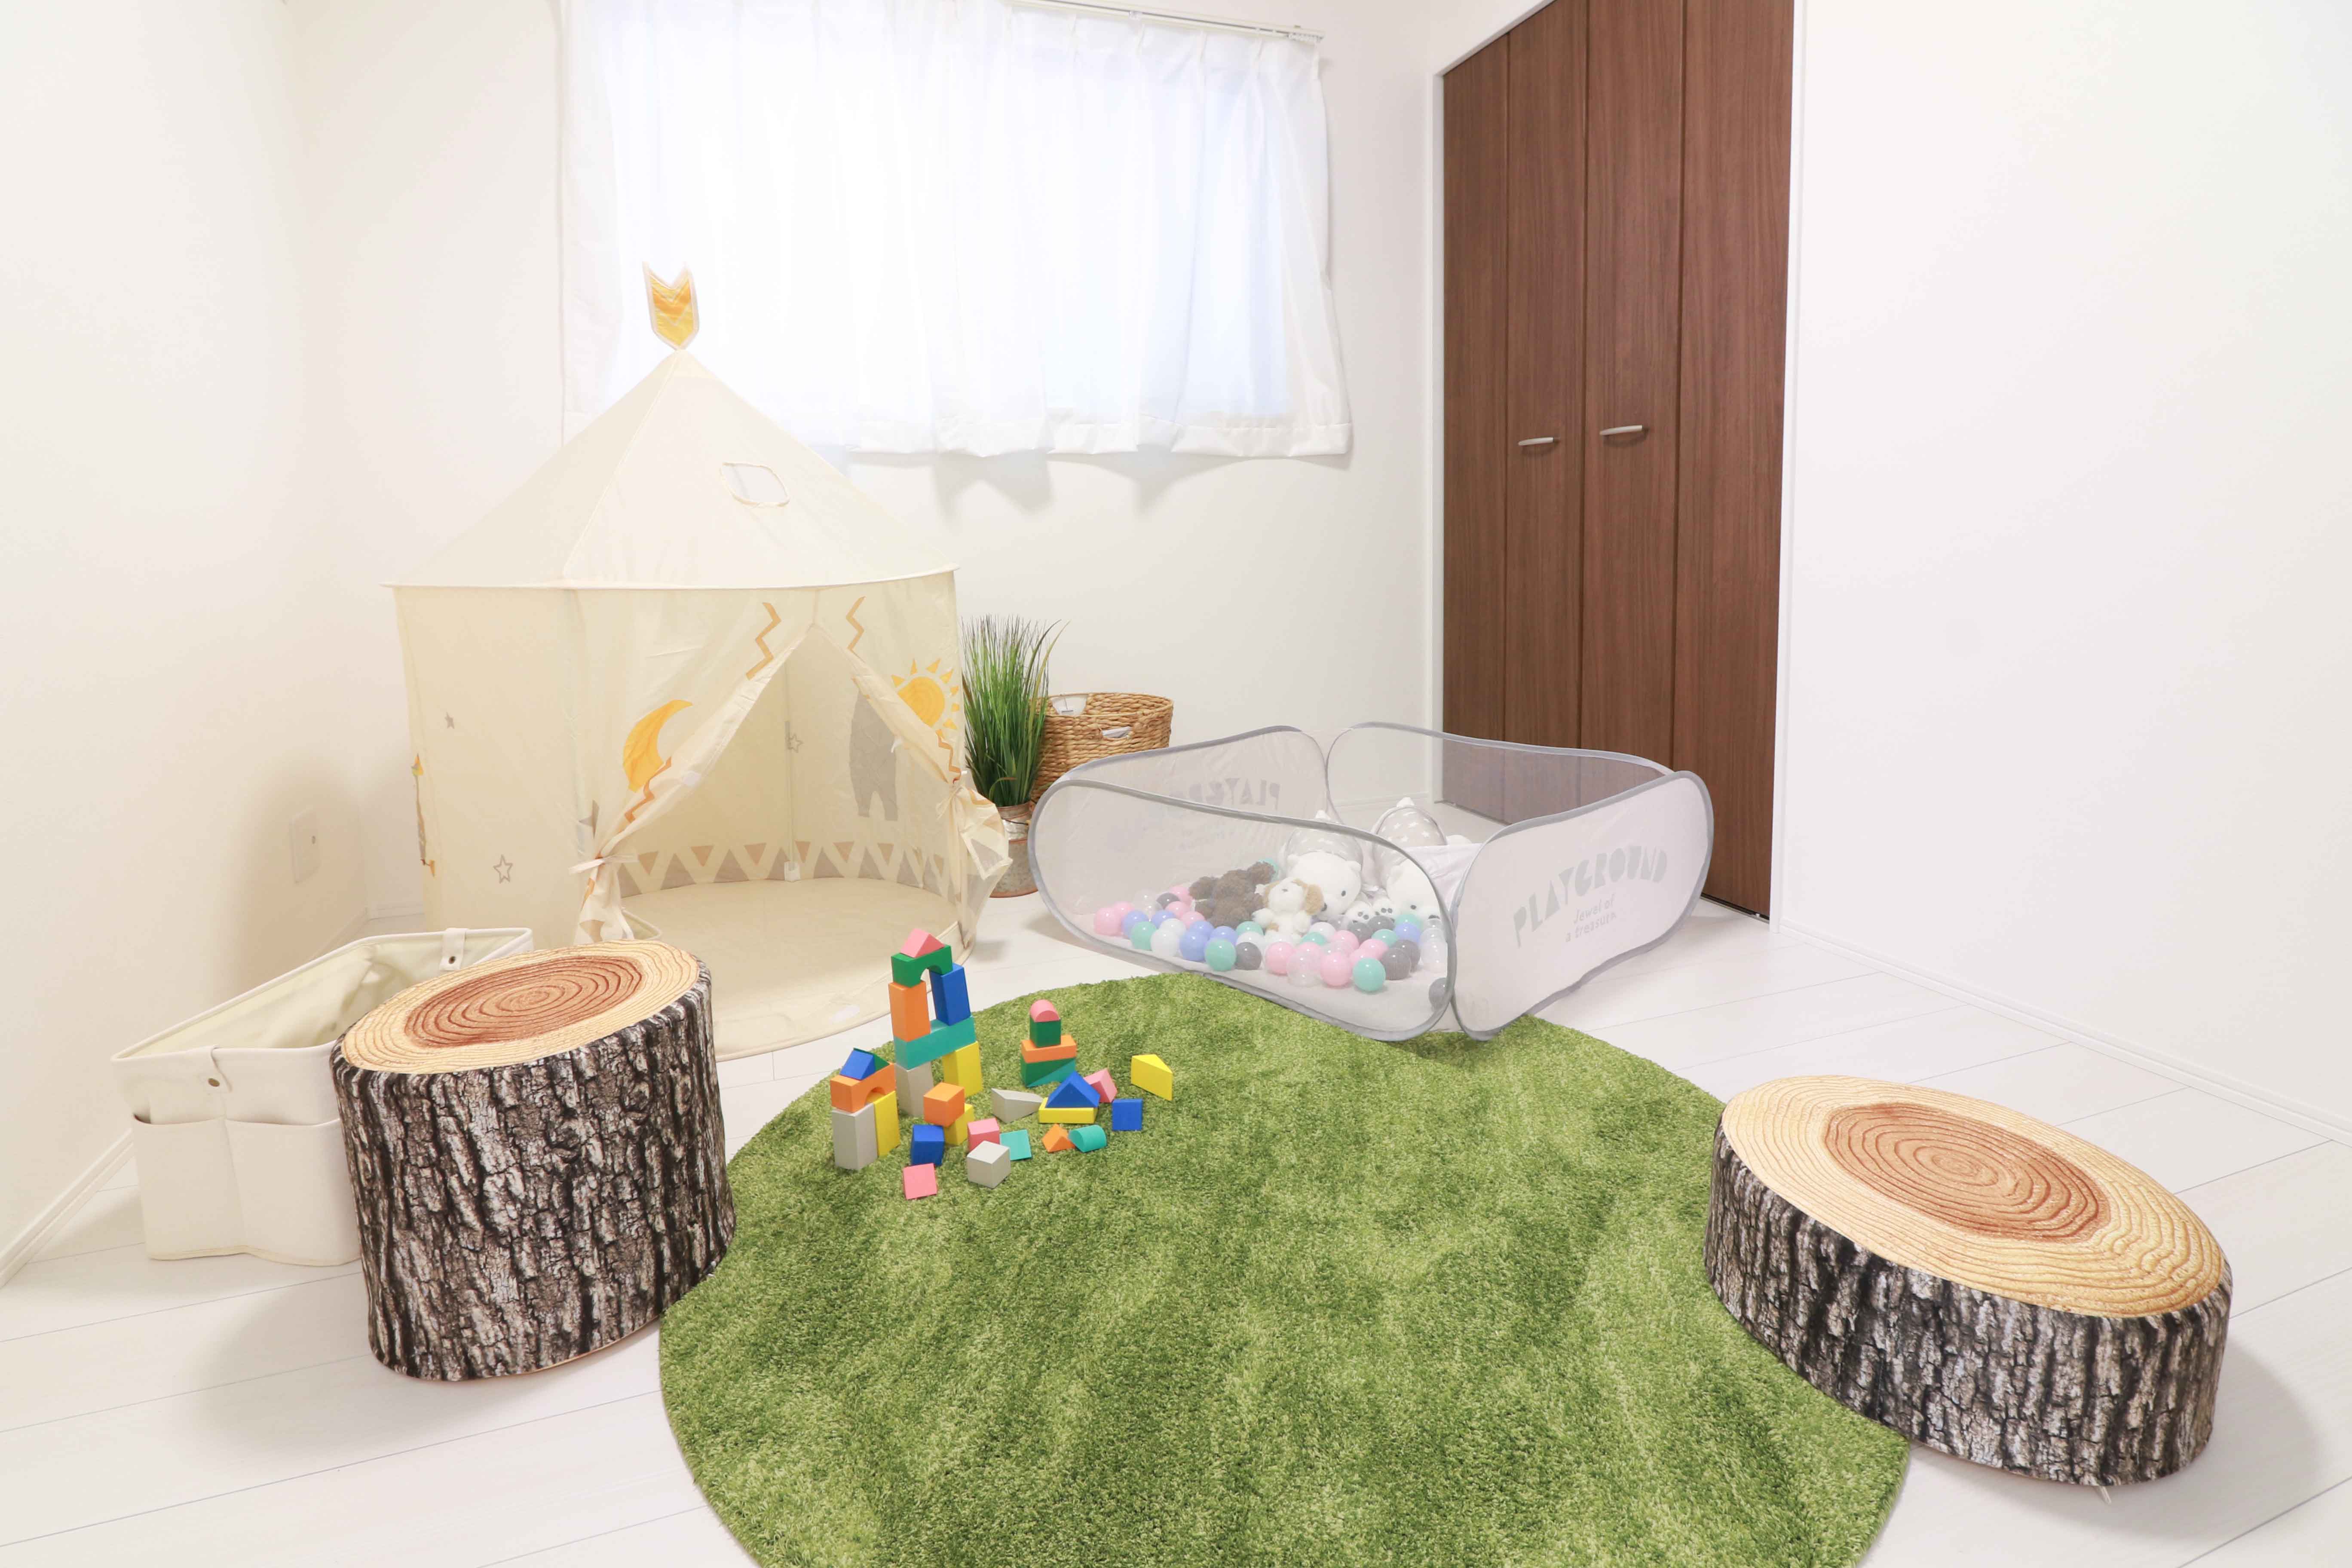 1F居室は生活スタイルに応じて、一体的に利用することができます。お子様用のキッズリビングや、来客時の寝室として仕切ったり幅広く利用できます♪※施工事例です。実物とは異なります。